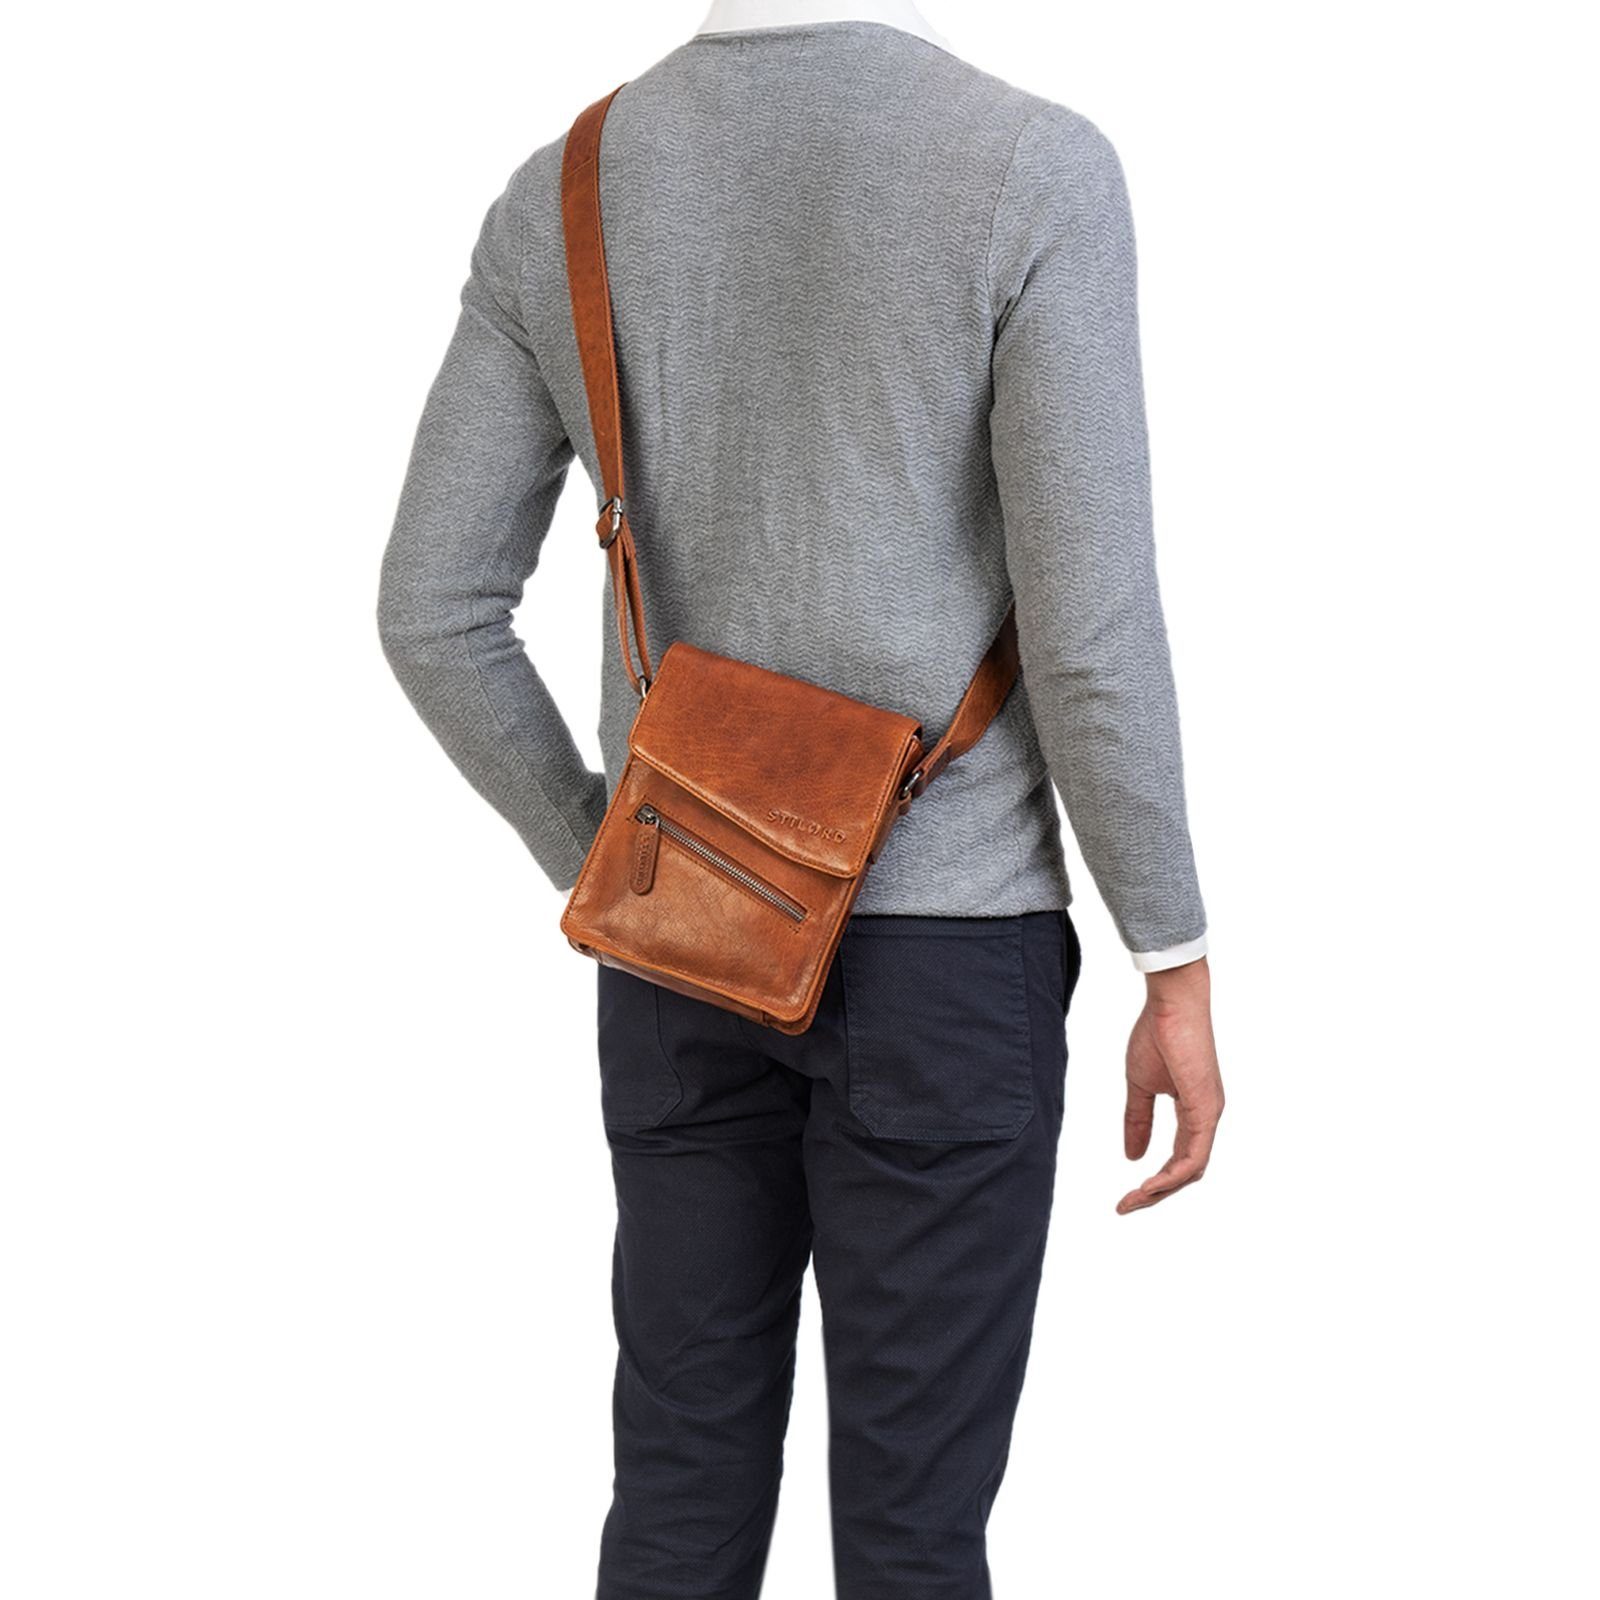 STILORD Messenger Bag Herren "Steve" braun - Kleine maraska Tasche Leder